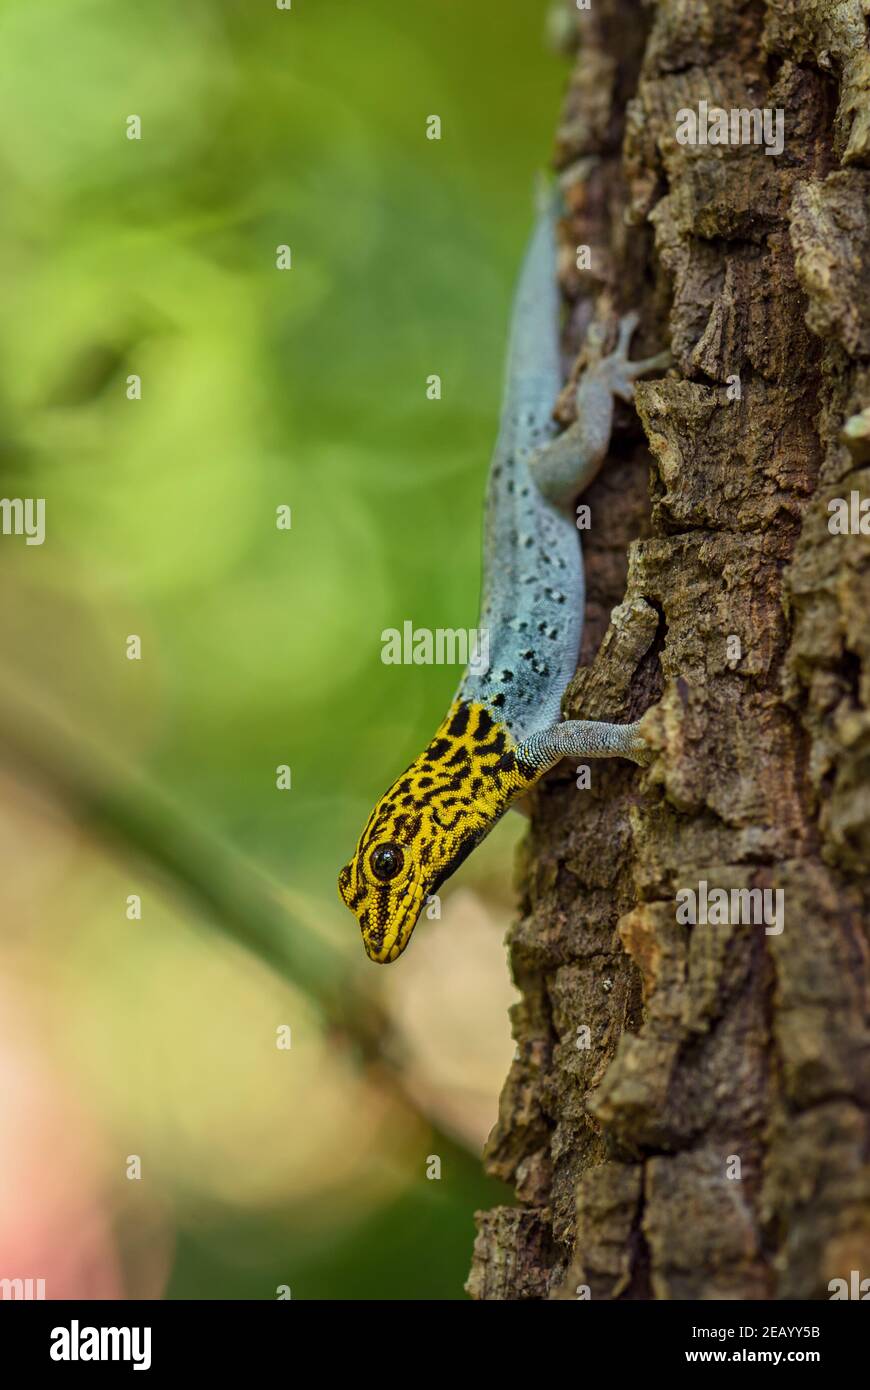 Gecko enano de cabeza amarilla - Lygodactylus luteopicturatus, hermoso lagarto de colores de bosques y bosques de África oriental, Zanzíbar, Tanzania. Foto de stock